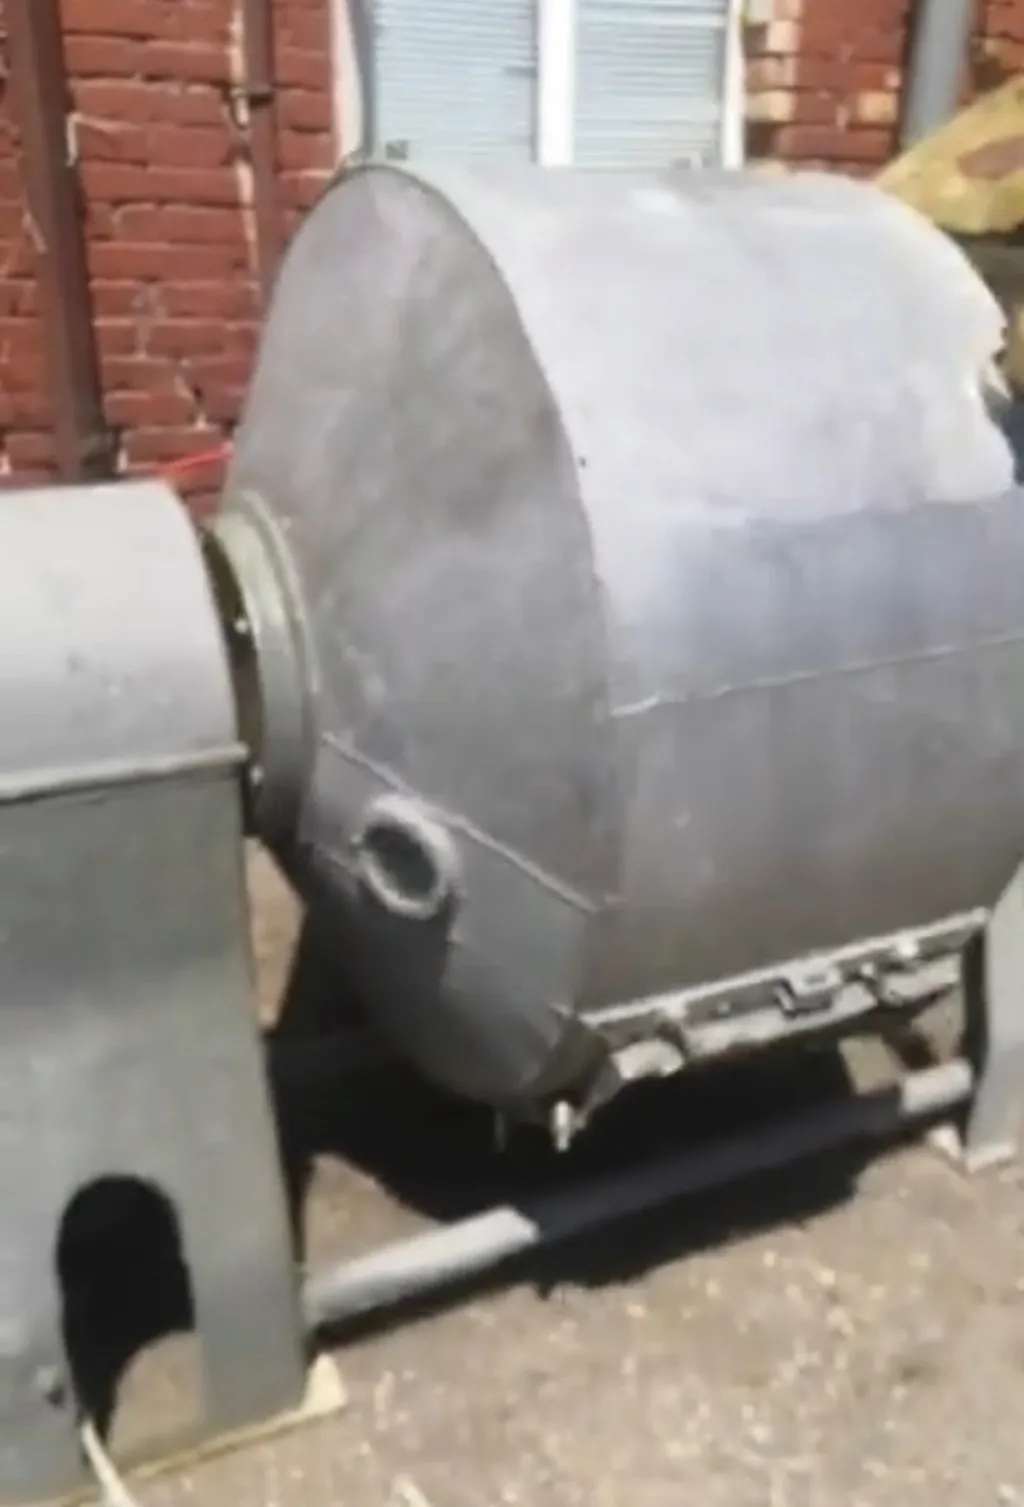 маслобойка маслоизготовитель на 1 тонну  в Видном